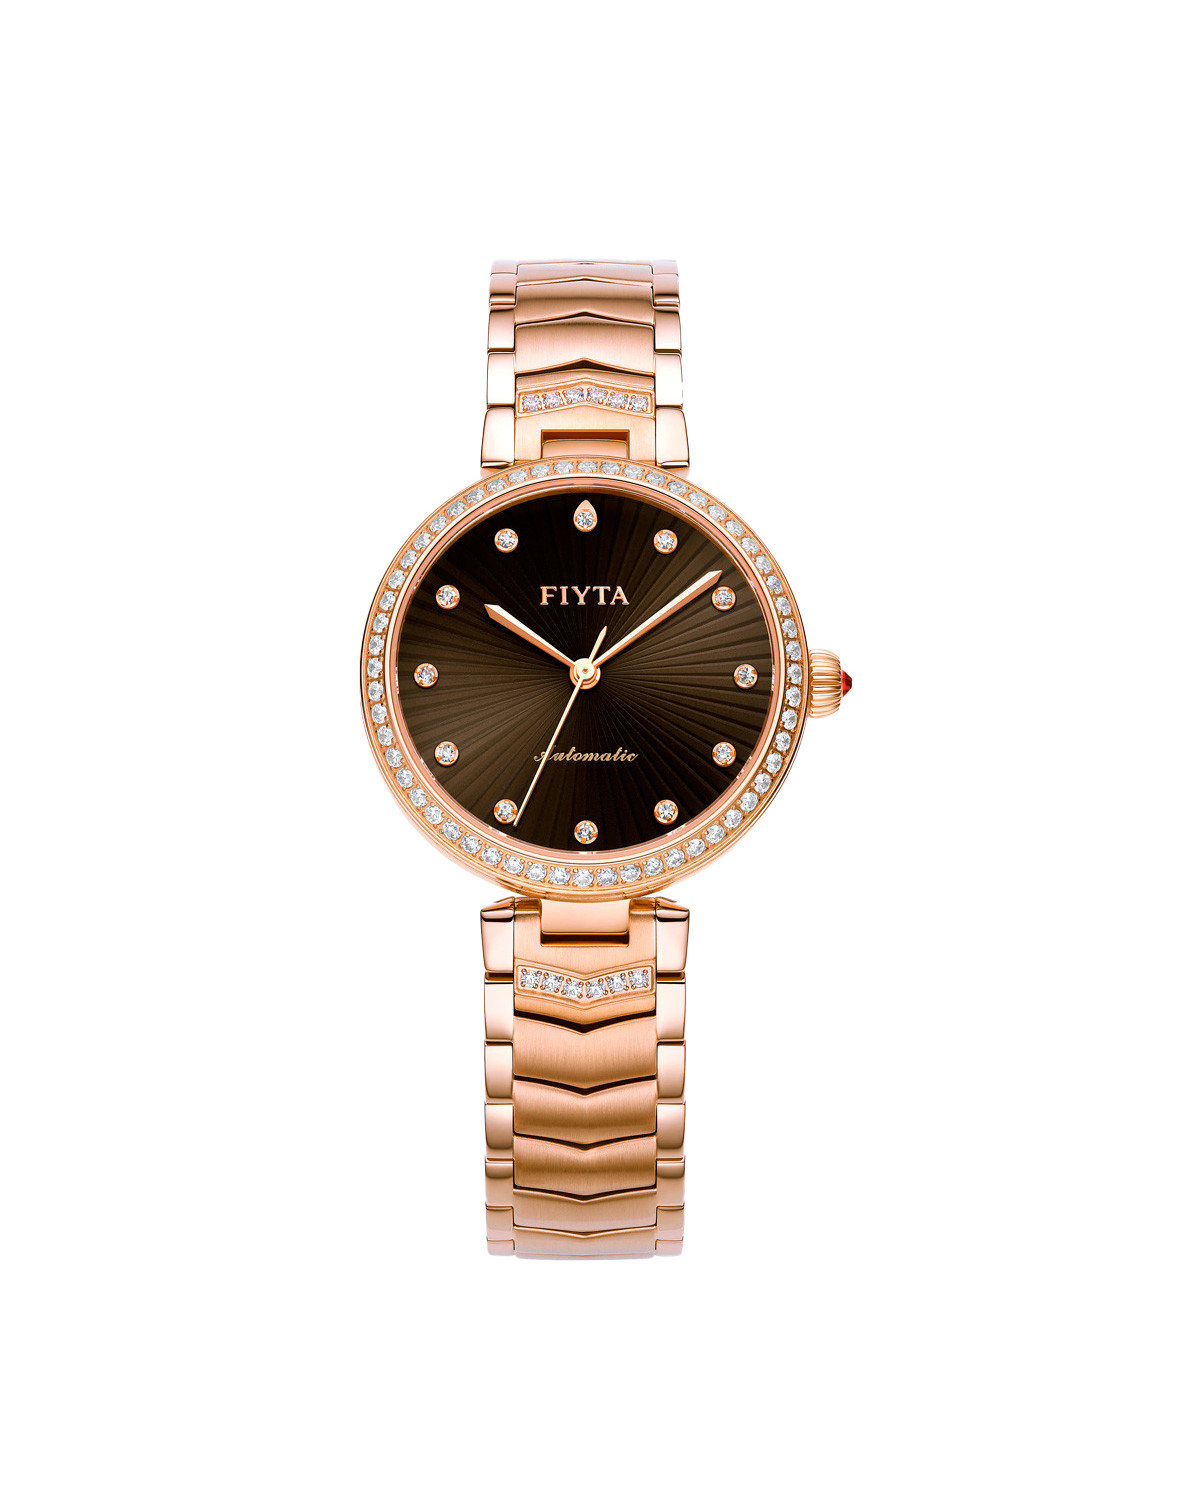 Fiyta women's watch